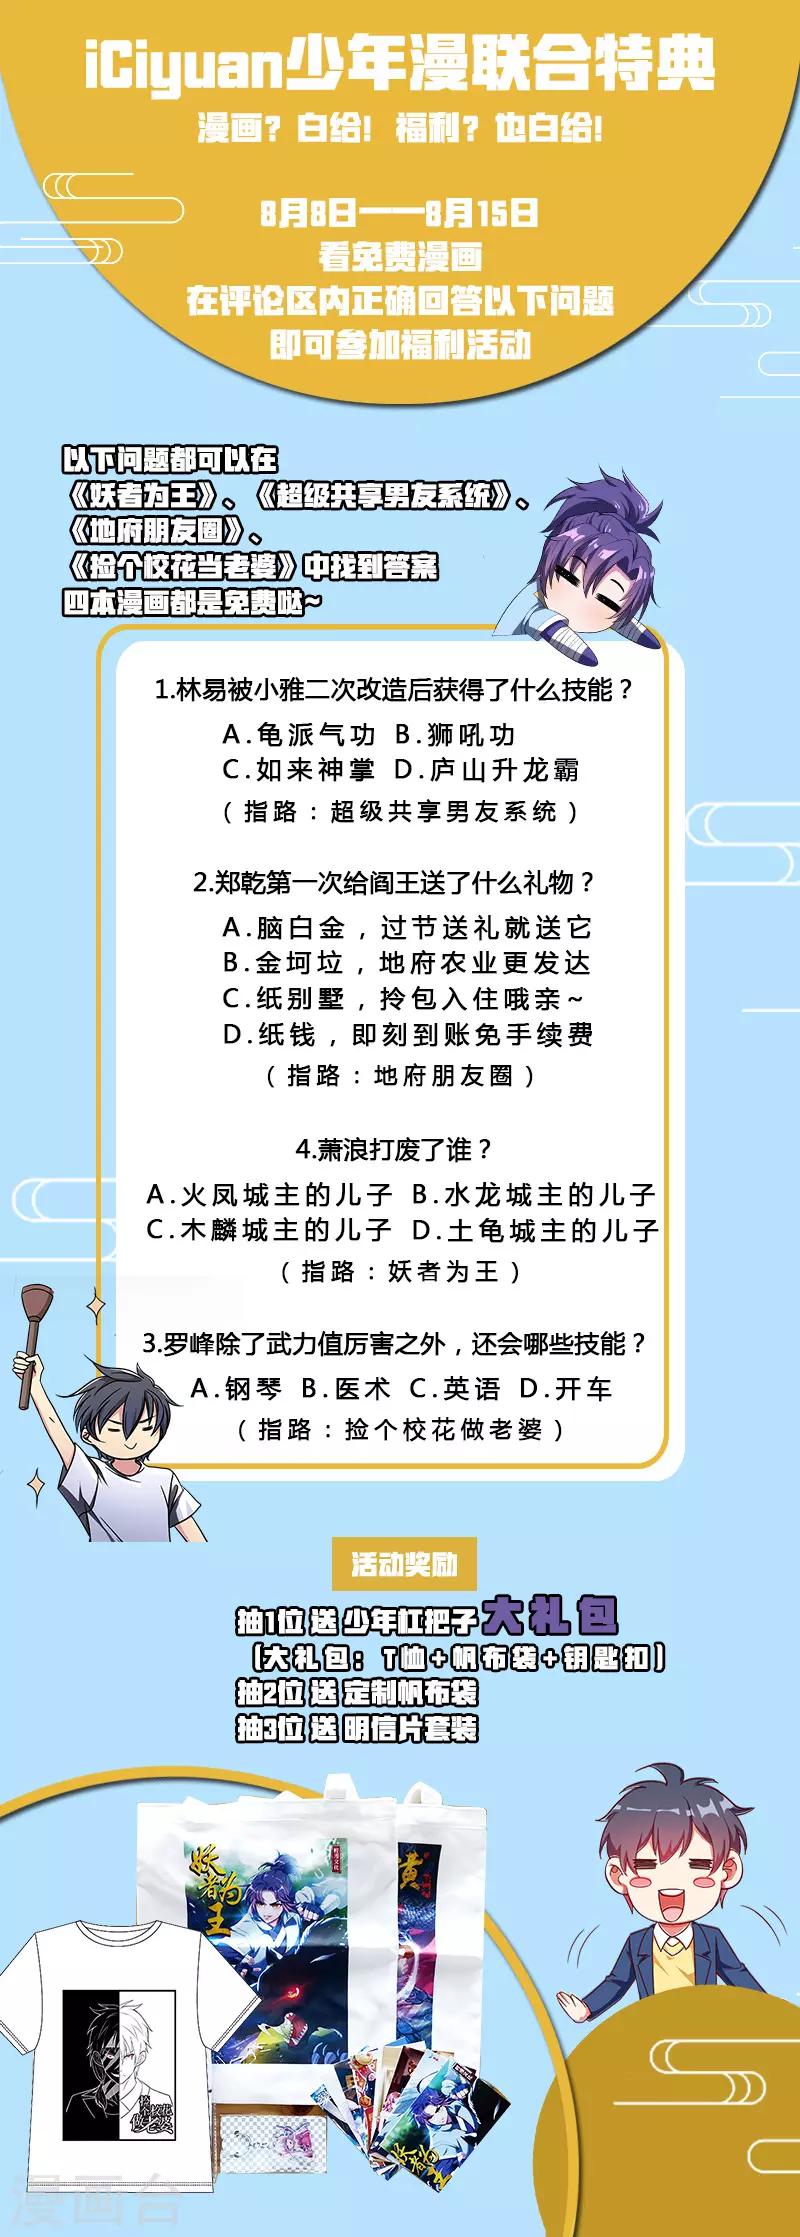 妖者为王 - 8月9日活动 少年漫联合活动 - 1